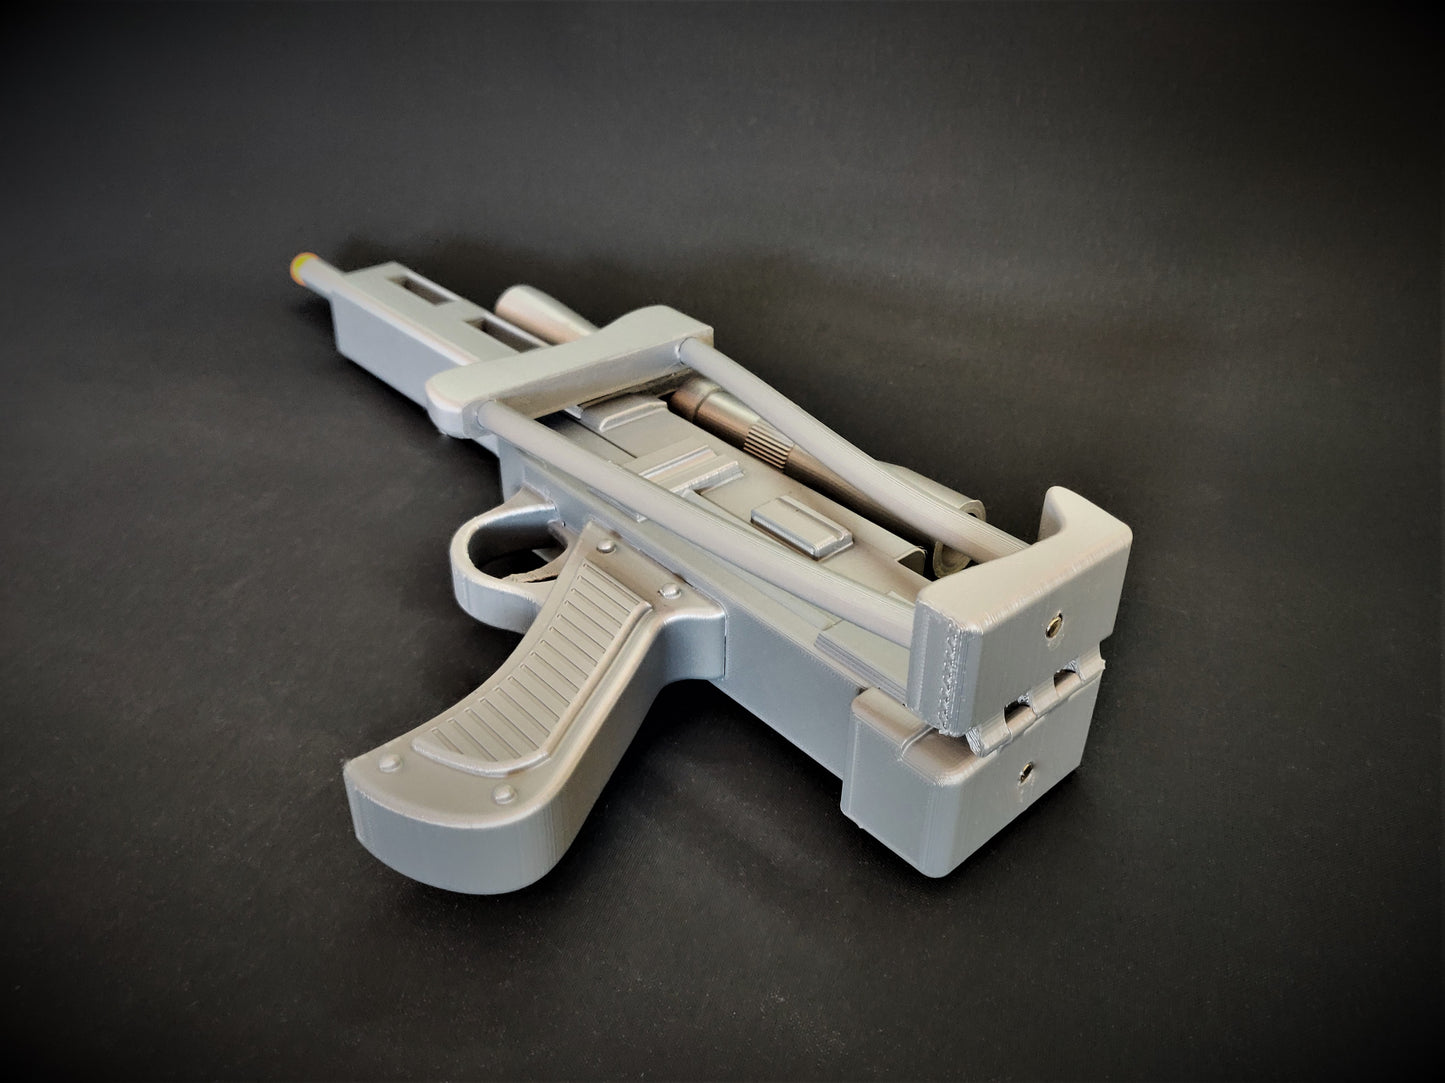 AT-AT - Sci-Fi Blaster - 3D Printed Replica